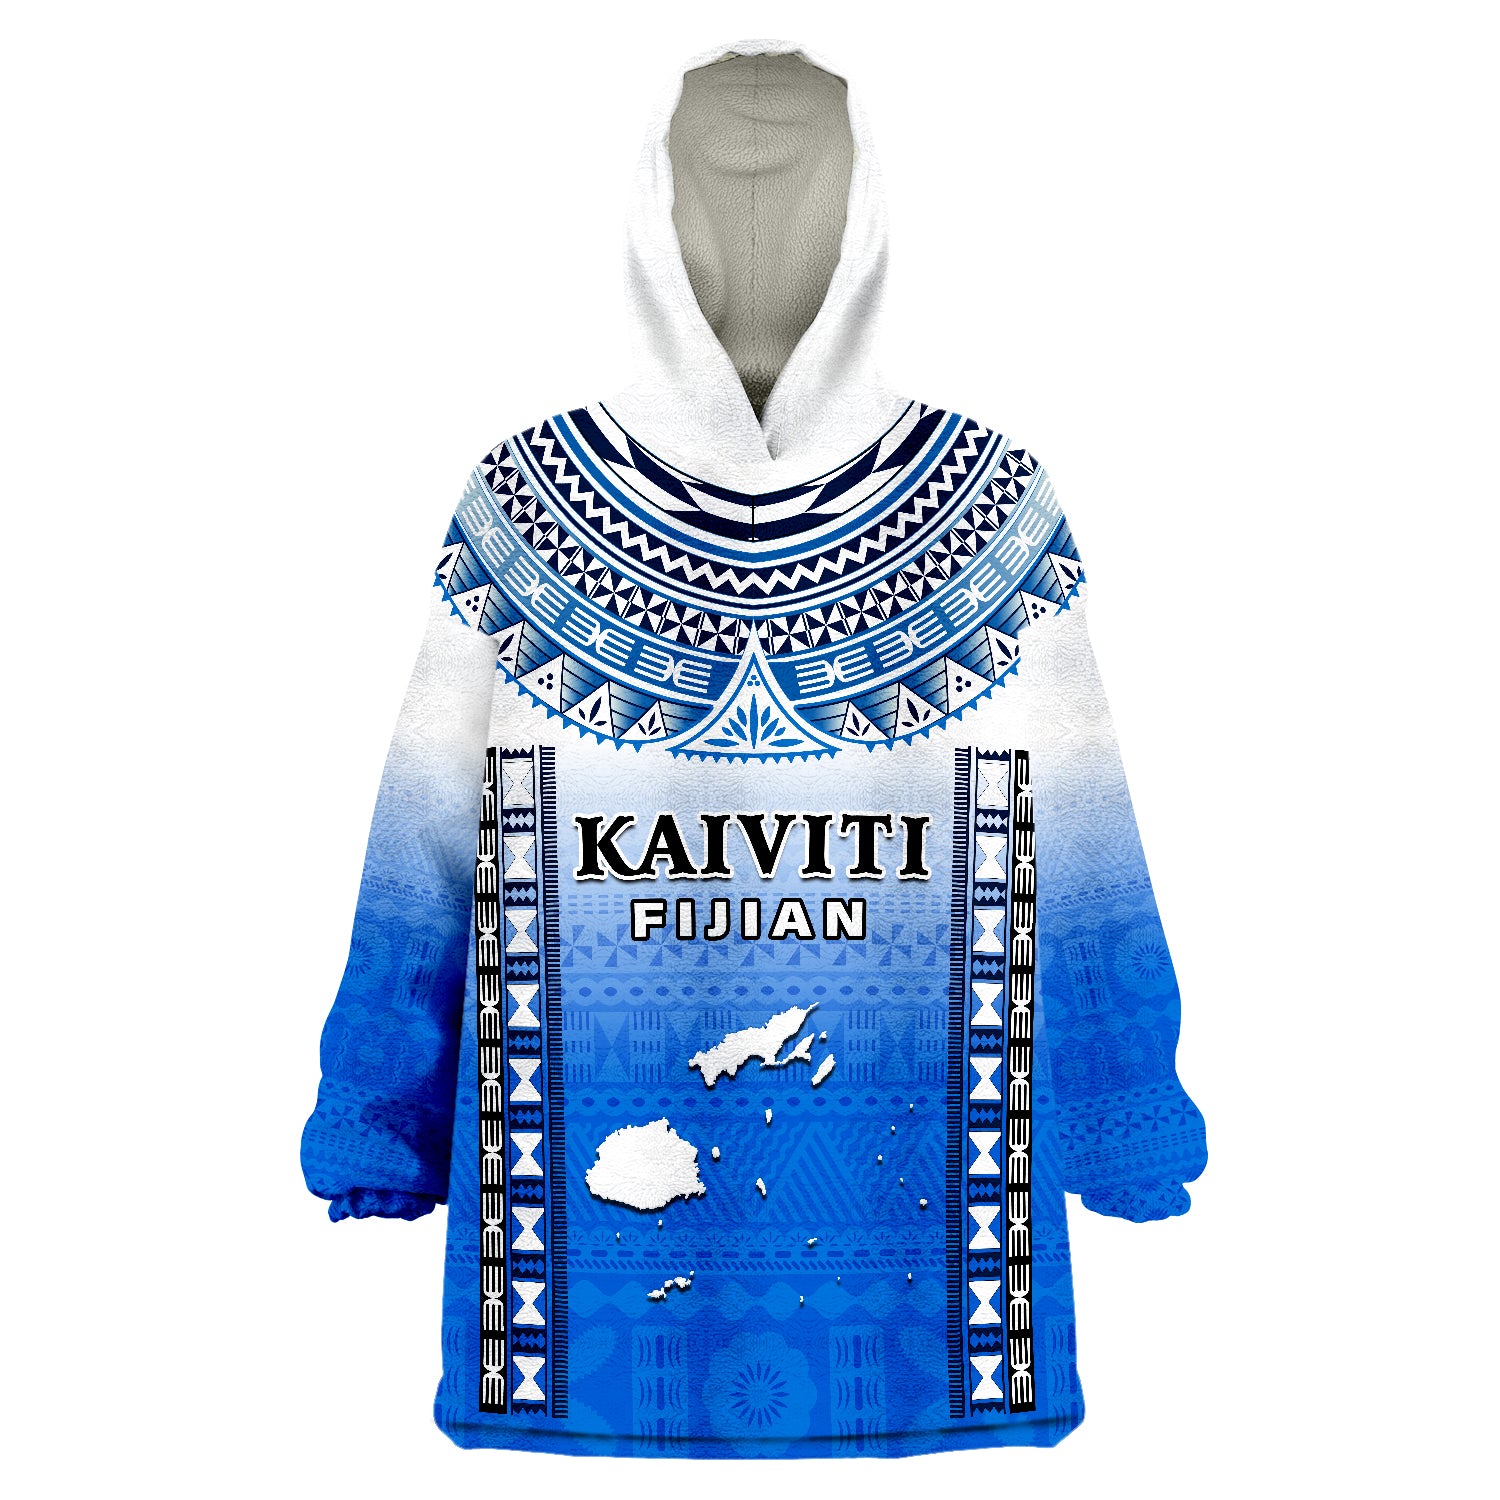 Fiji Kaiviti Fijian Special Tapa Pattern Wearable Blanket Hoodie LT14 Unisex One Size - Polynesian Pride